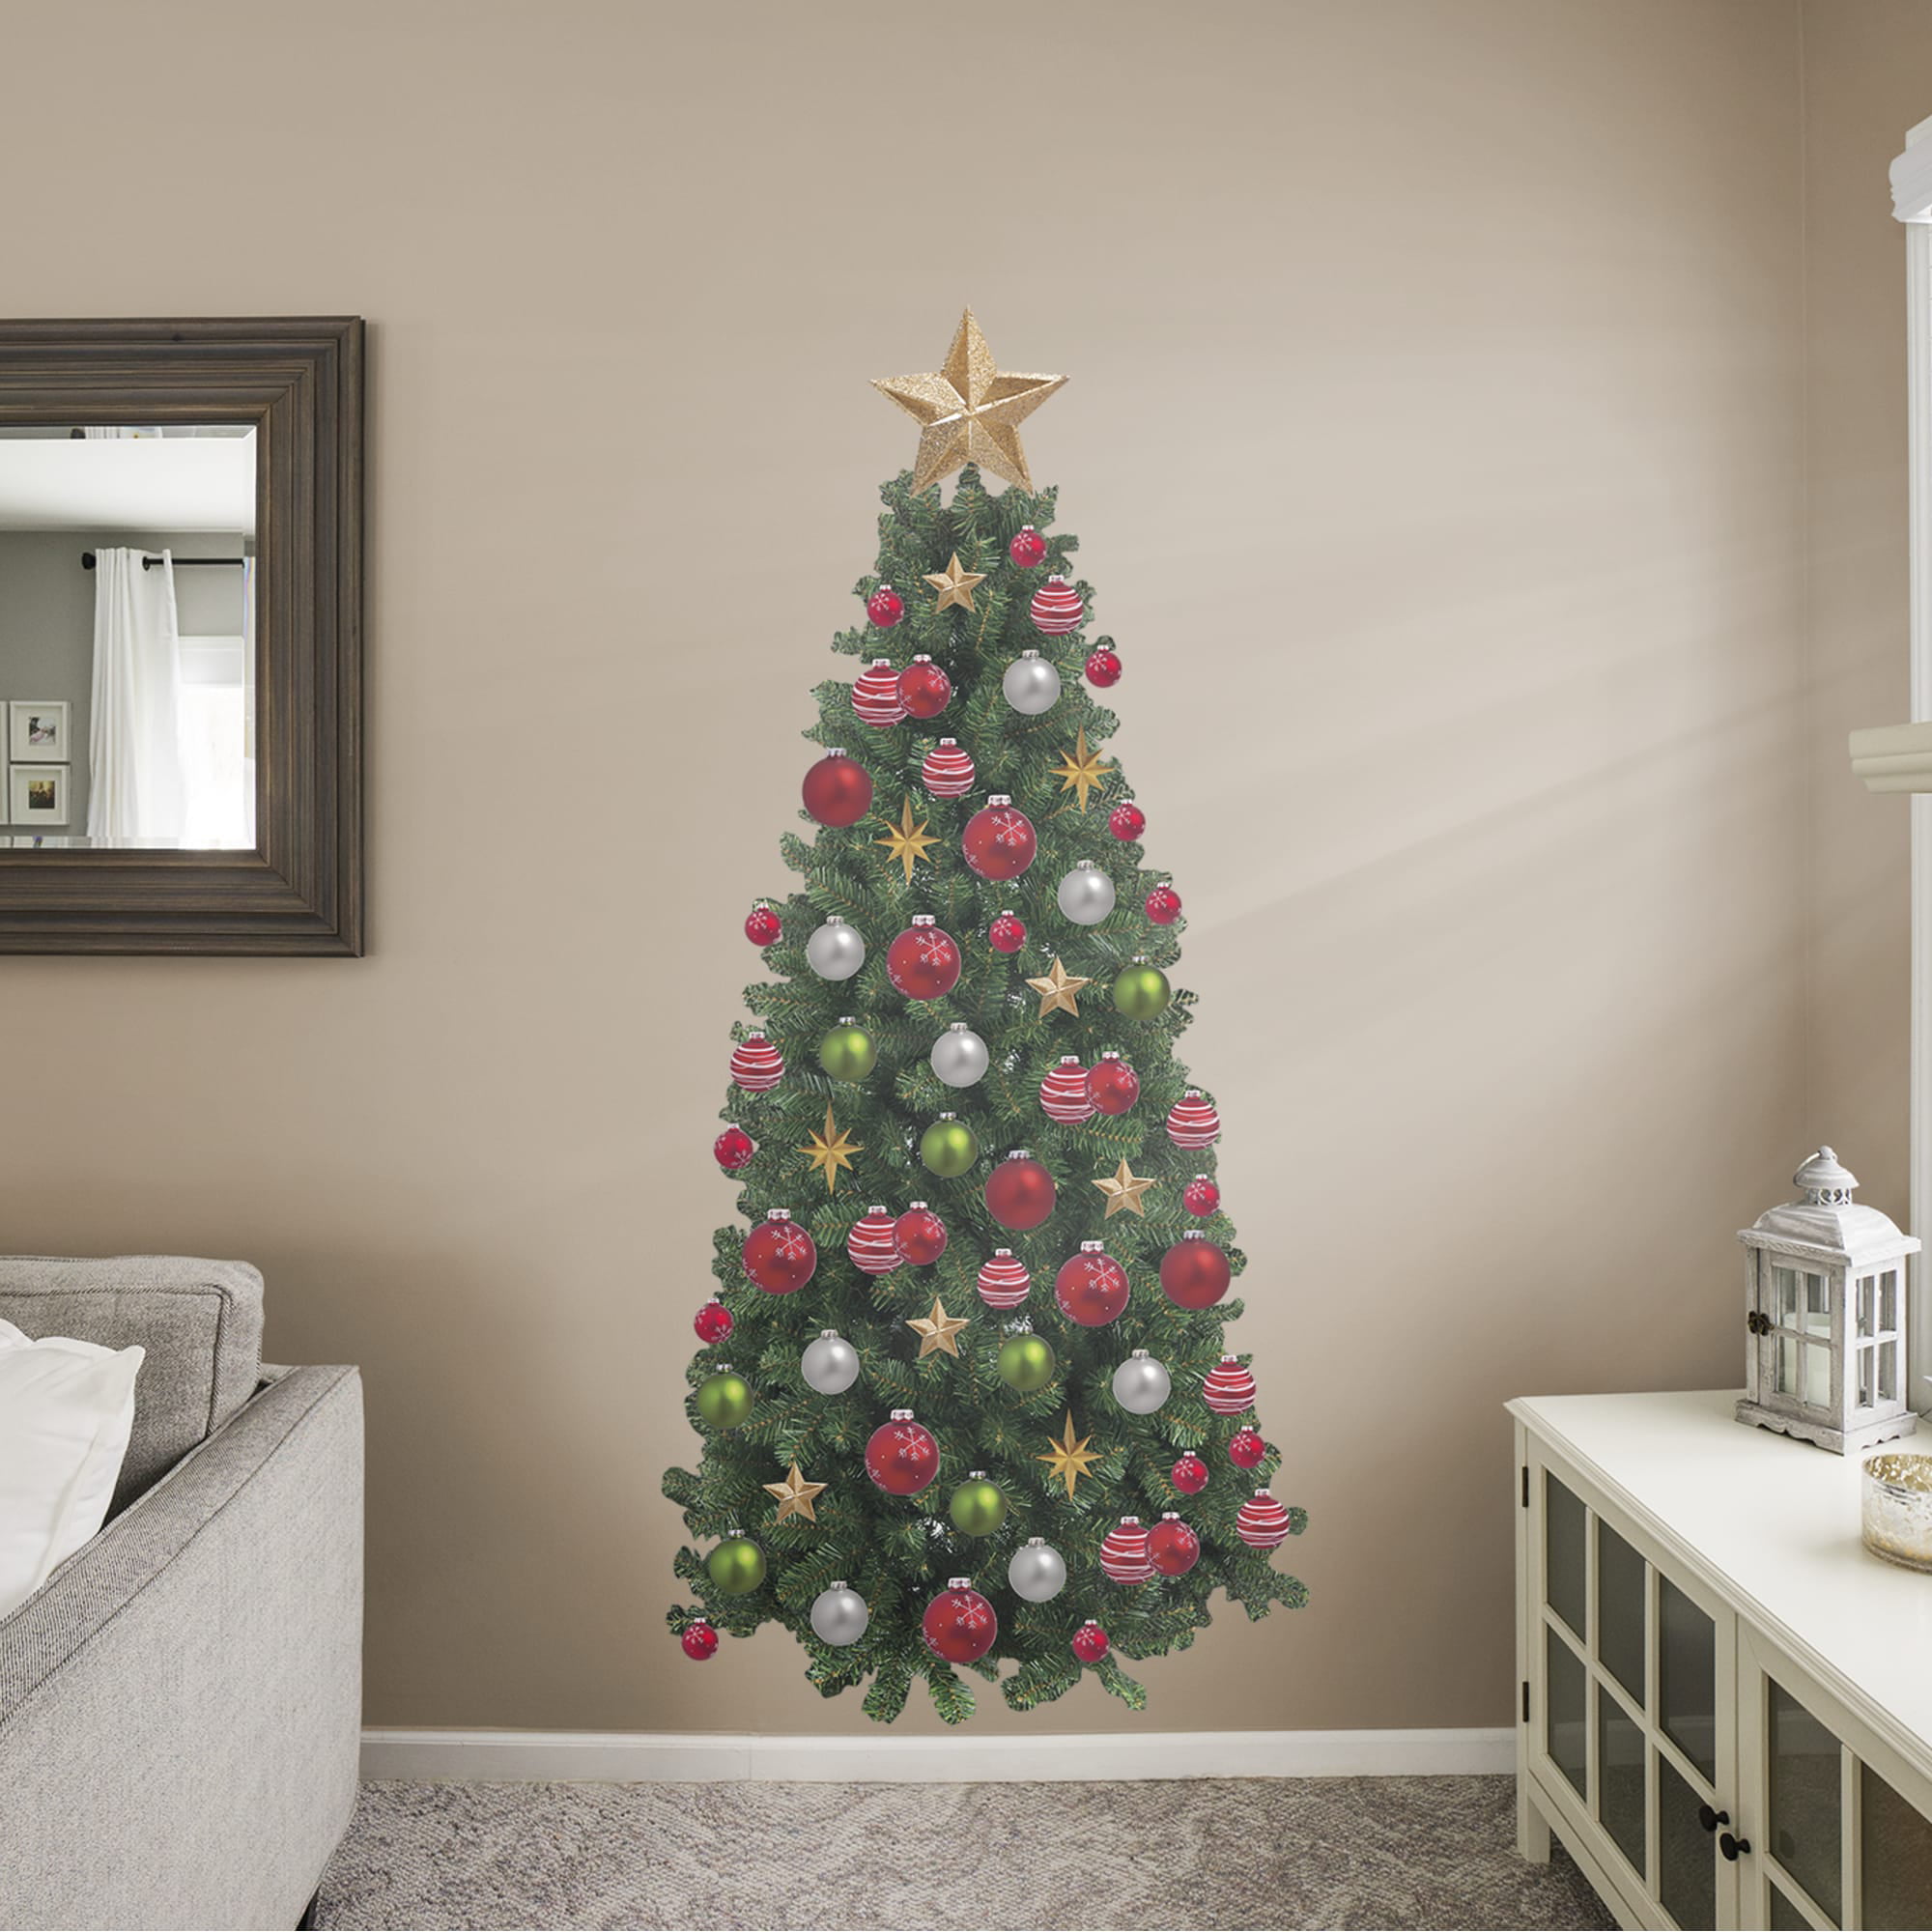 Fathead Christmas Tree - Life-Size Holiday Removable Wall Decal - Walmart.com - Walmart.com